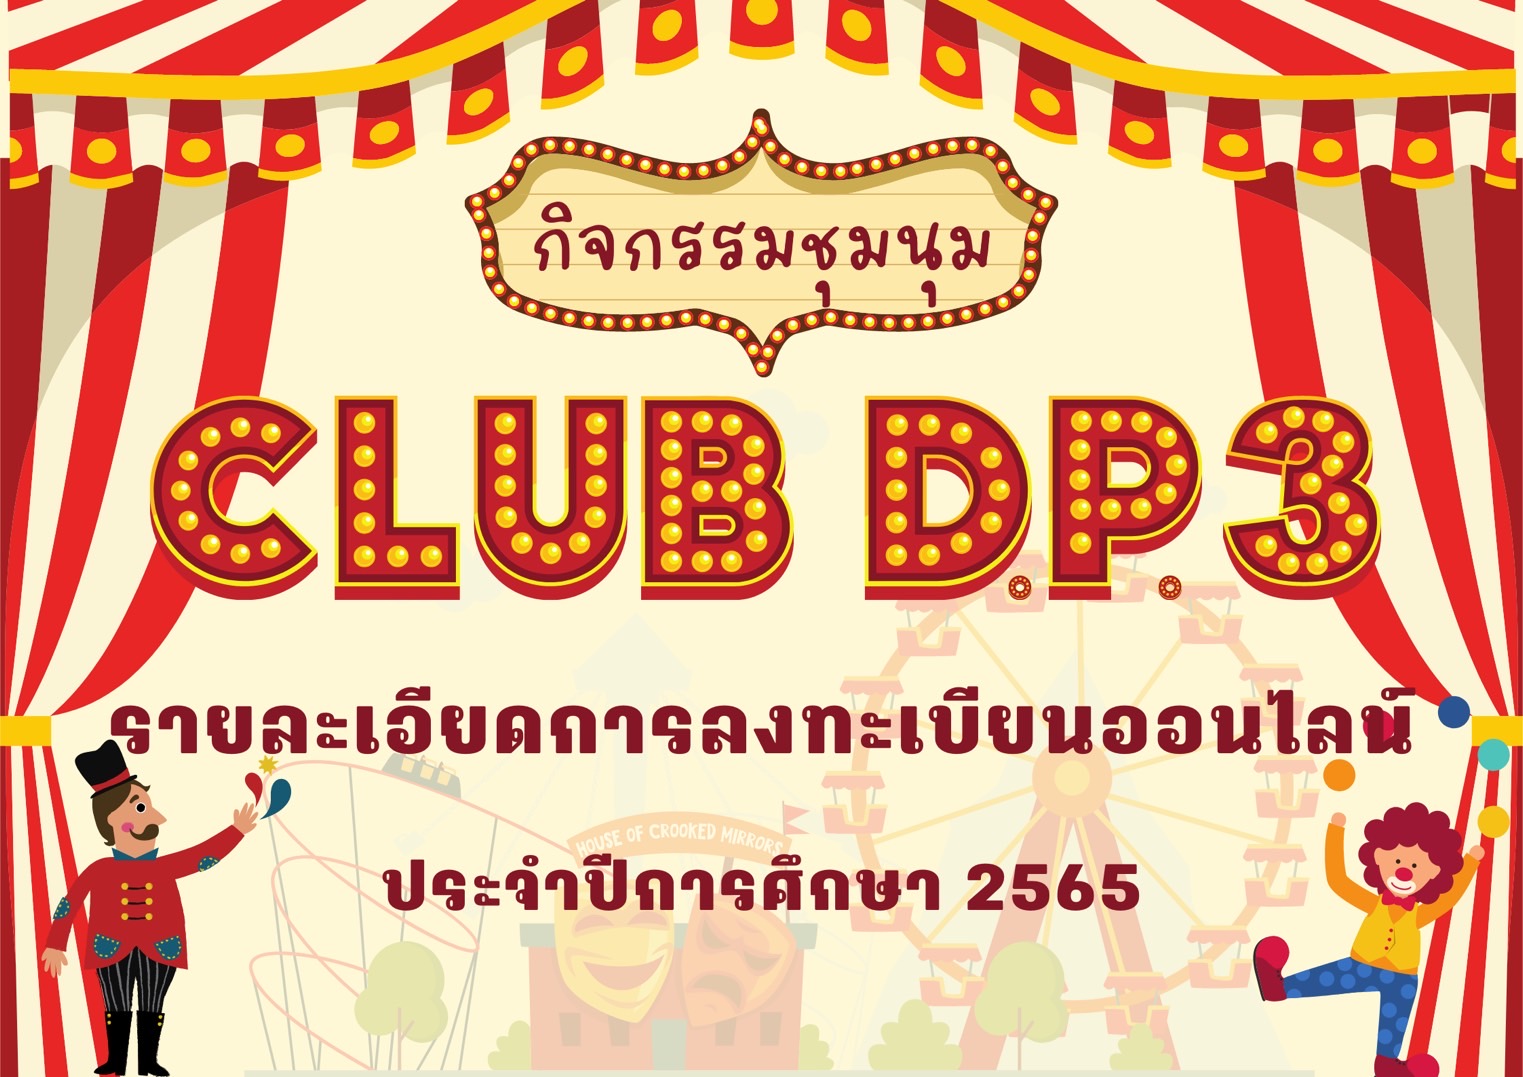 D.P.3 Club